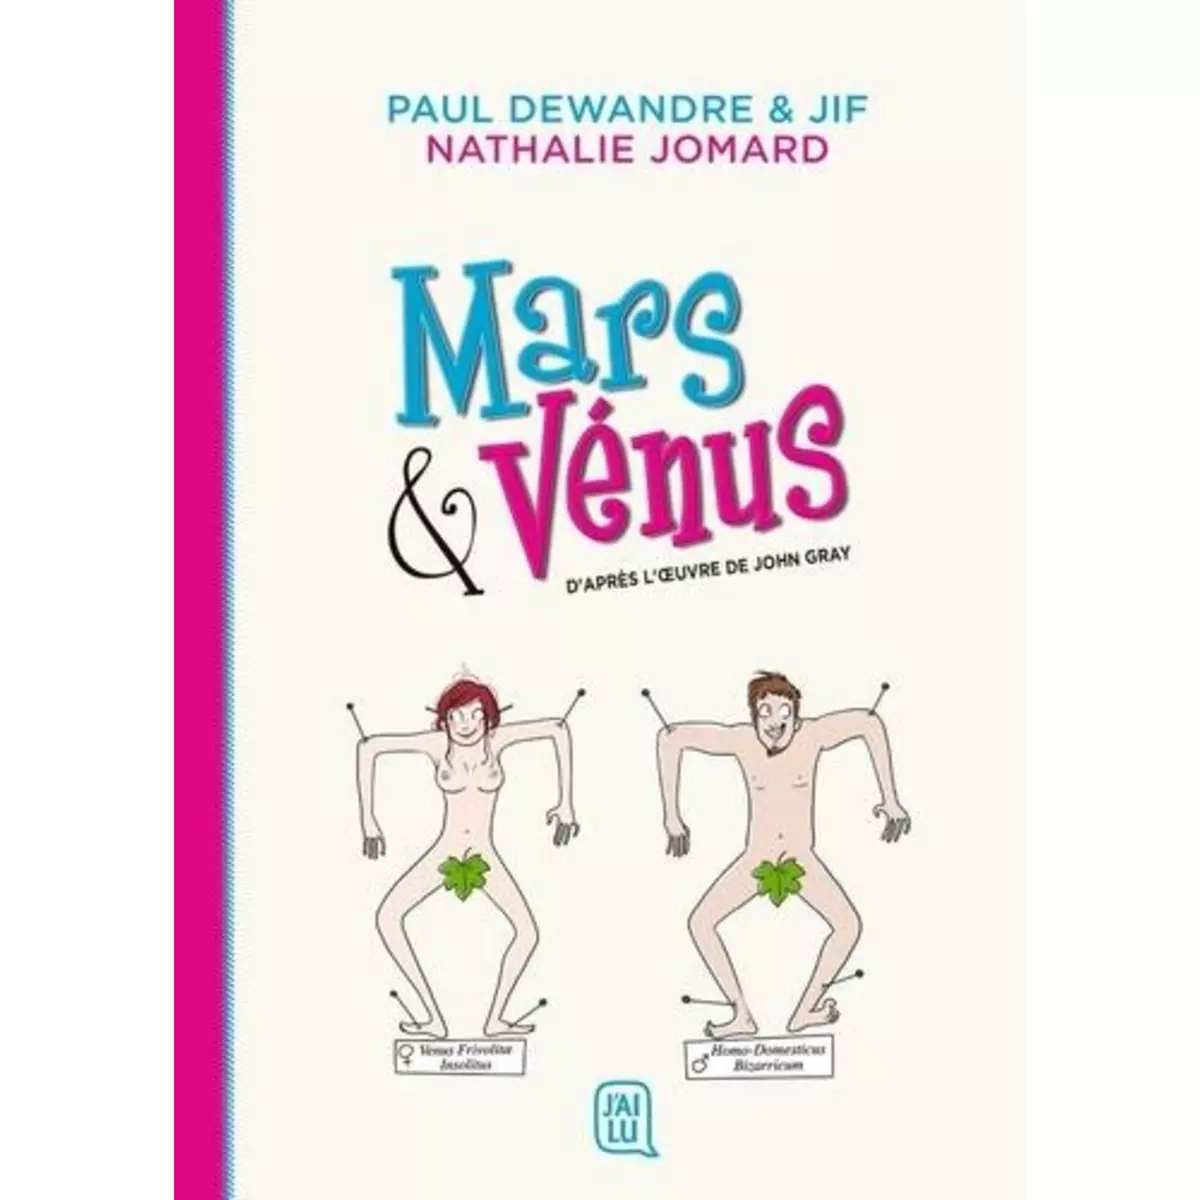  MARS & VENUS, Dewandre Paul